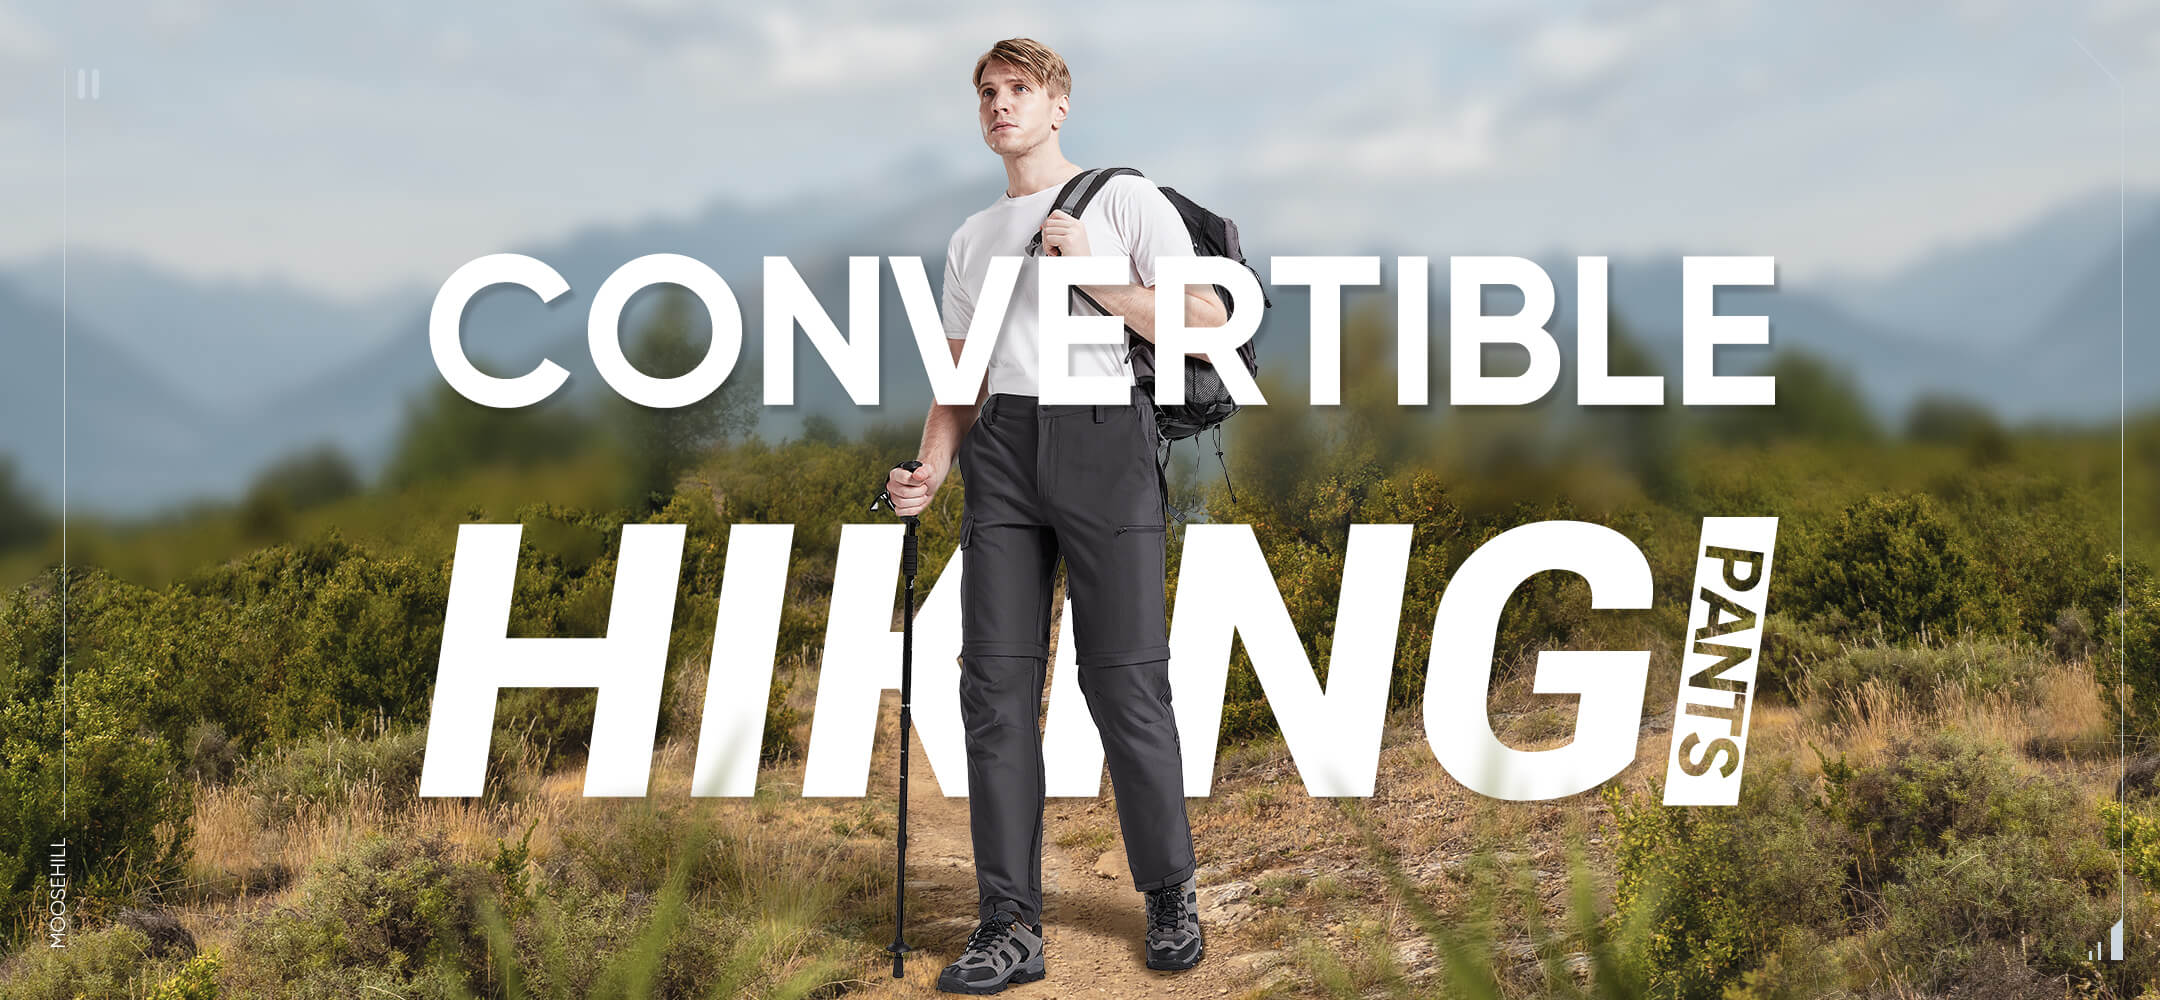 convertible_hiking_pants